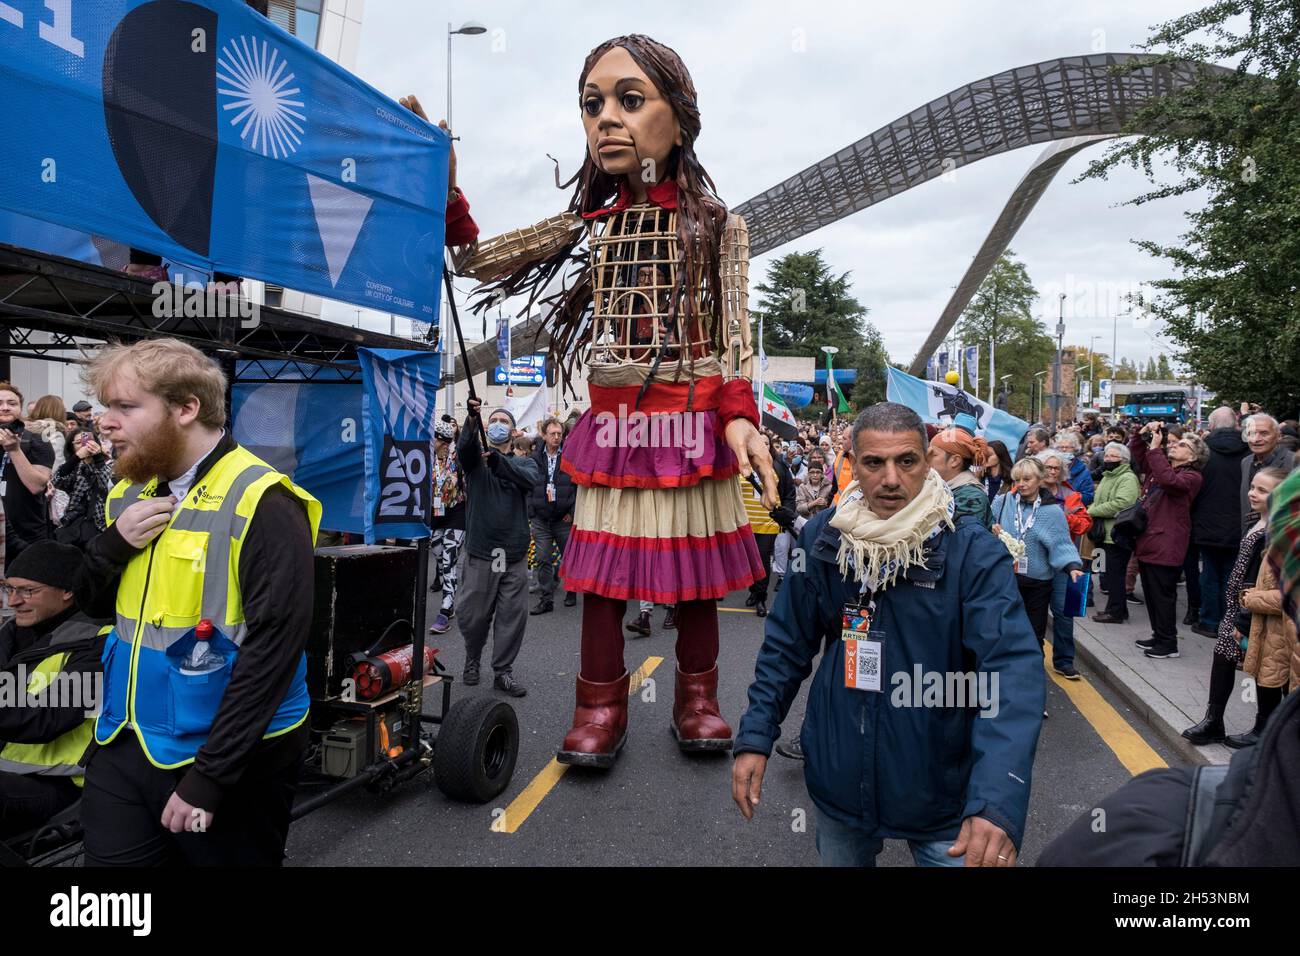 Little Amal enchante les foules de spectateurs alors qu'elle se promène dans le centre-ville le 27 octobre 2020 à Coventry, au Royaume-Uni.Little Amal est une marionnette de 3.5 mètres de haut et une œuvre d'art vivante d'un jeune enfant réfugié syrien qui a passé les 3 derniers mois à marcher 8000 km de la frontière syrienne à travers la Turquie, la Grèce, l'Italie, la France, la Suisse,L'Allemagne, la Belgique et le Royaume-Uni doivent attirer l'attention sur les besoins urgents des jeunes réfugiés.Coventry, qui a le plus grand programme syrien de réinstallation dans la région, et aussi une grande population de demandeurs d'asile, est la ville actuelle de la culture, avec un long son Banque D'Images